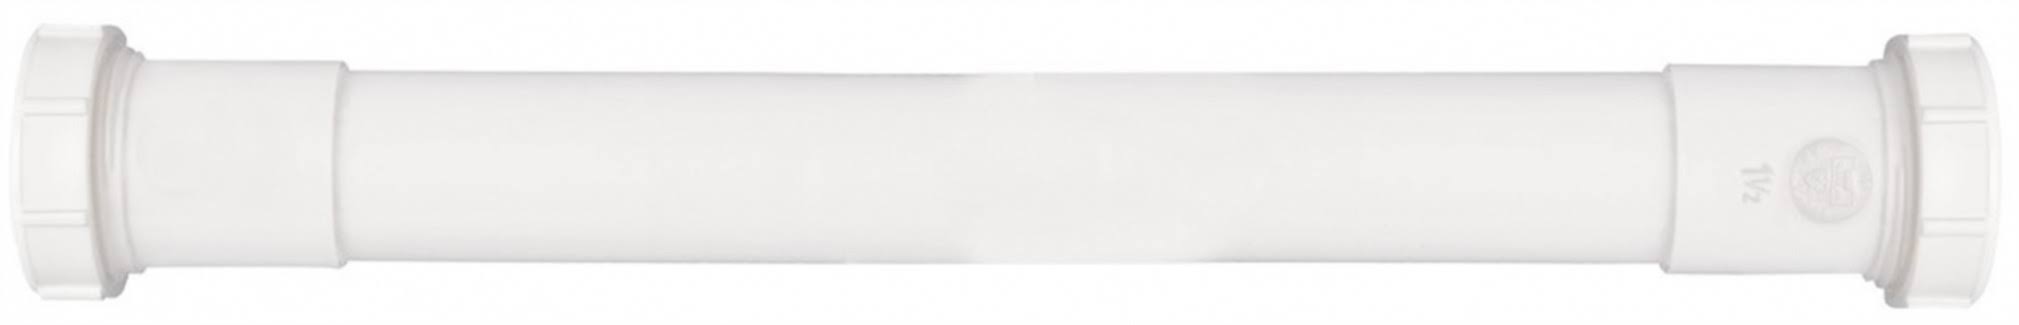 Plumb Pak Extension Tube - 1.5" X 16", White